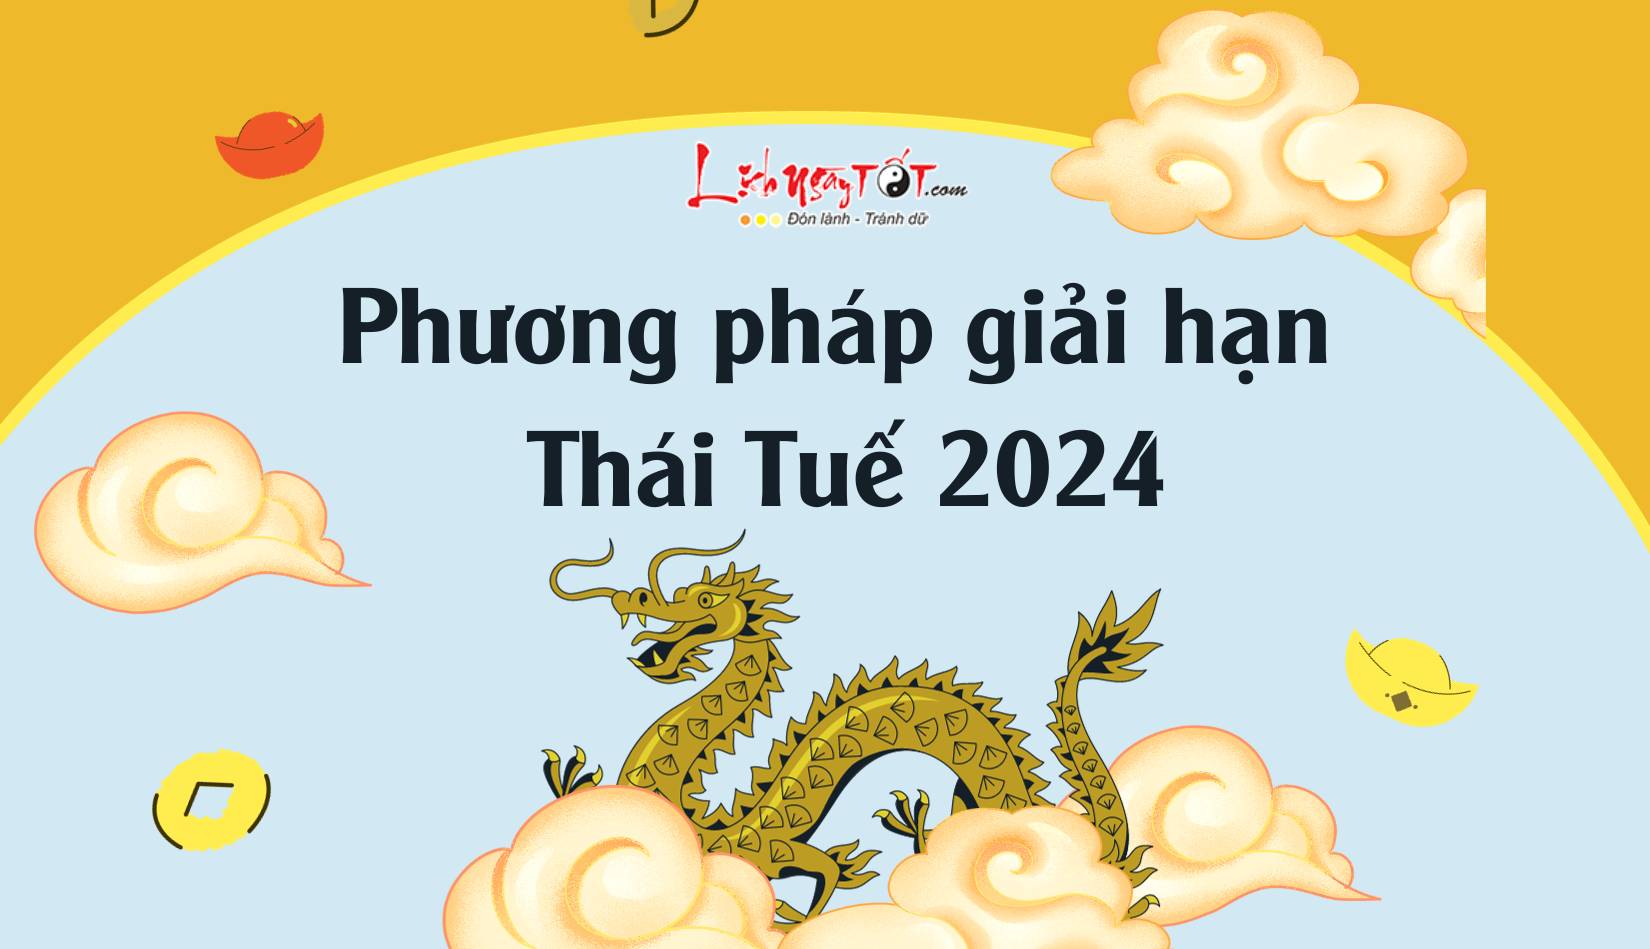 Phuong phap giai han Thai Tue 2024